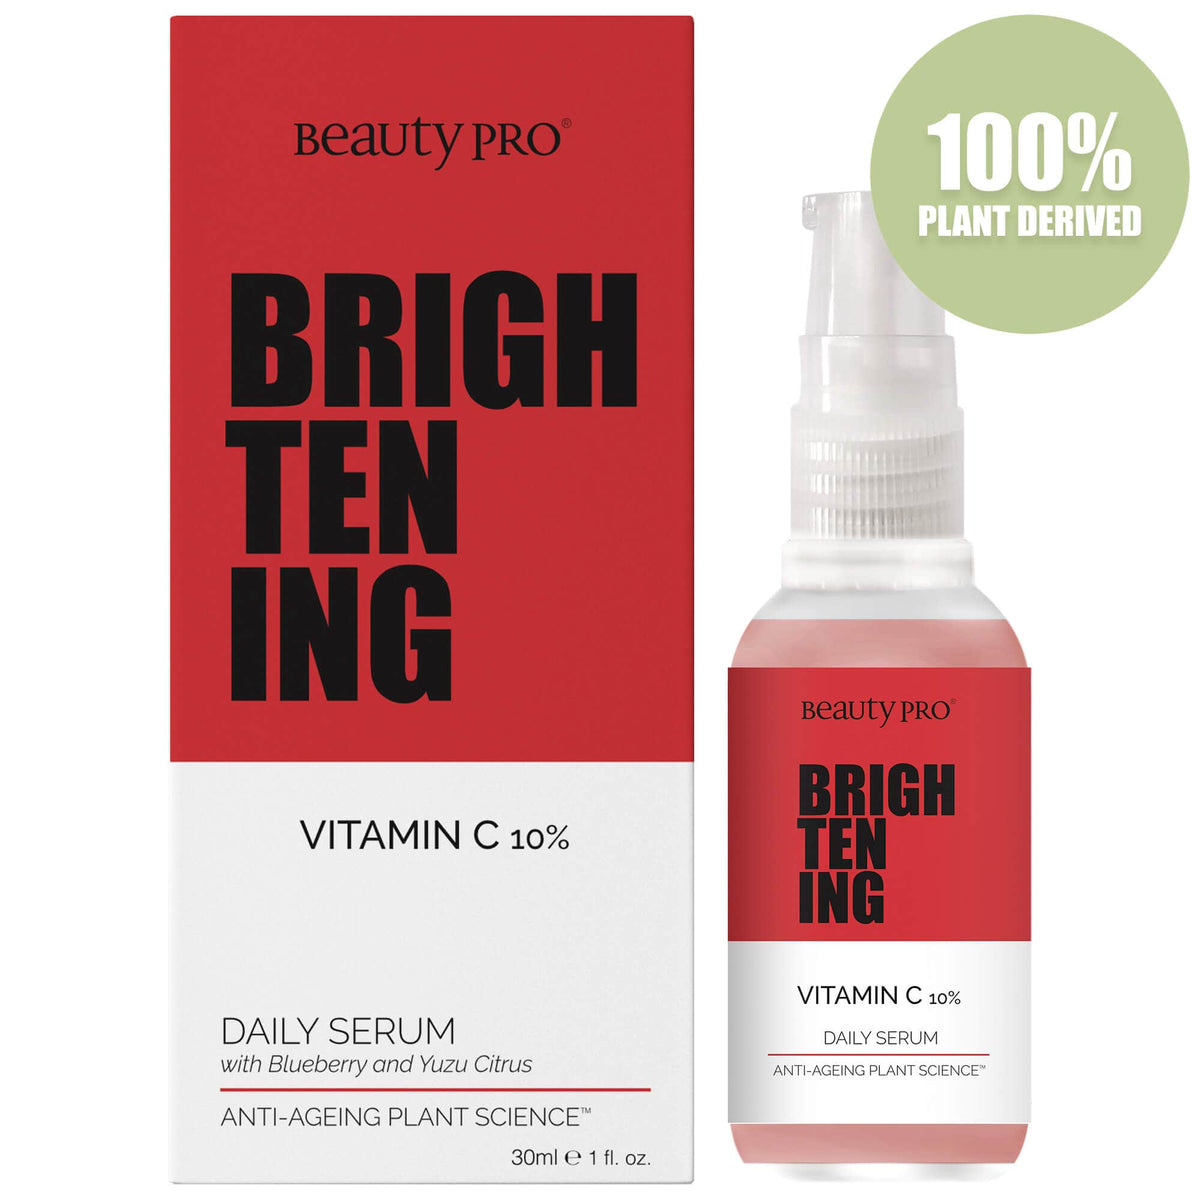 Beauty Pro Brightening Vitamin-C Daily Serum